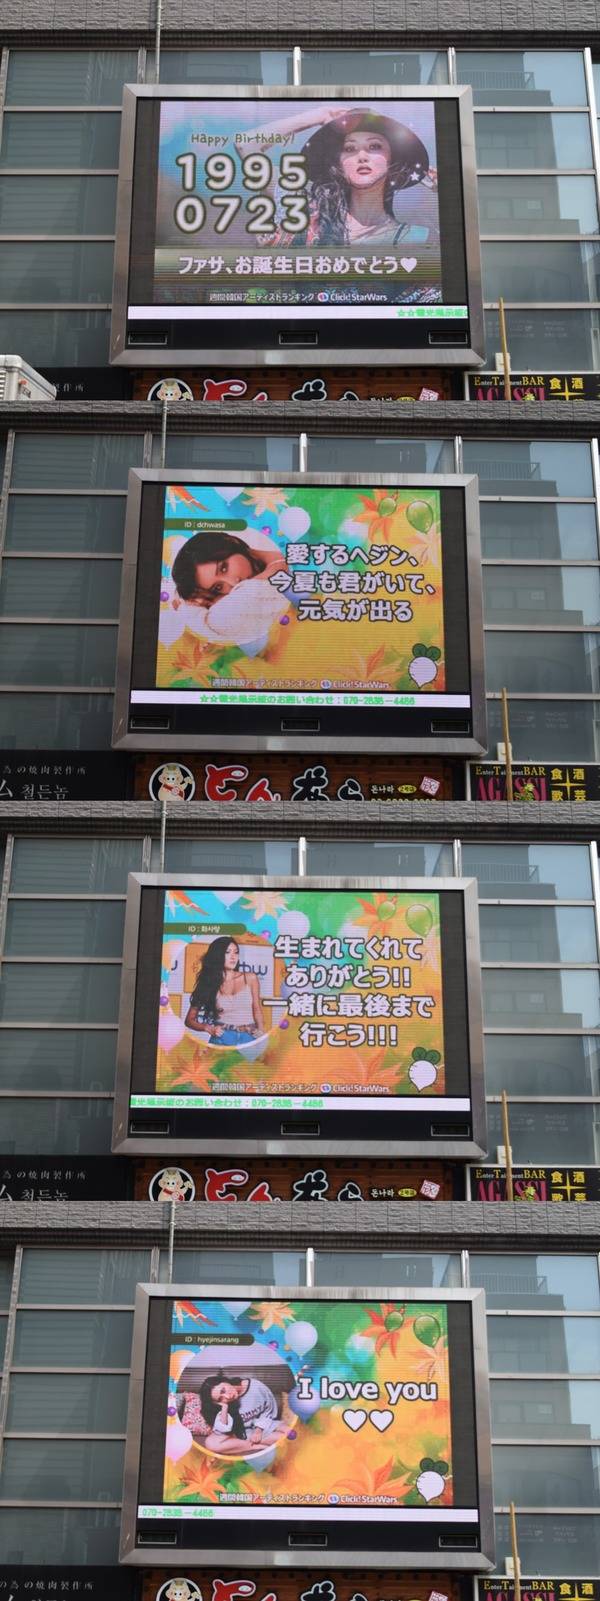 화사야, 생일 축하해 23일 그룹 마마무 화사의 생일을 맞아 일본 도쿄에 위치한 전광판에서 축하 영상이 상영 중이다. /클릭스타워즈